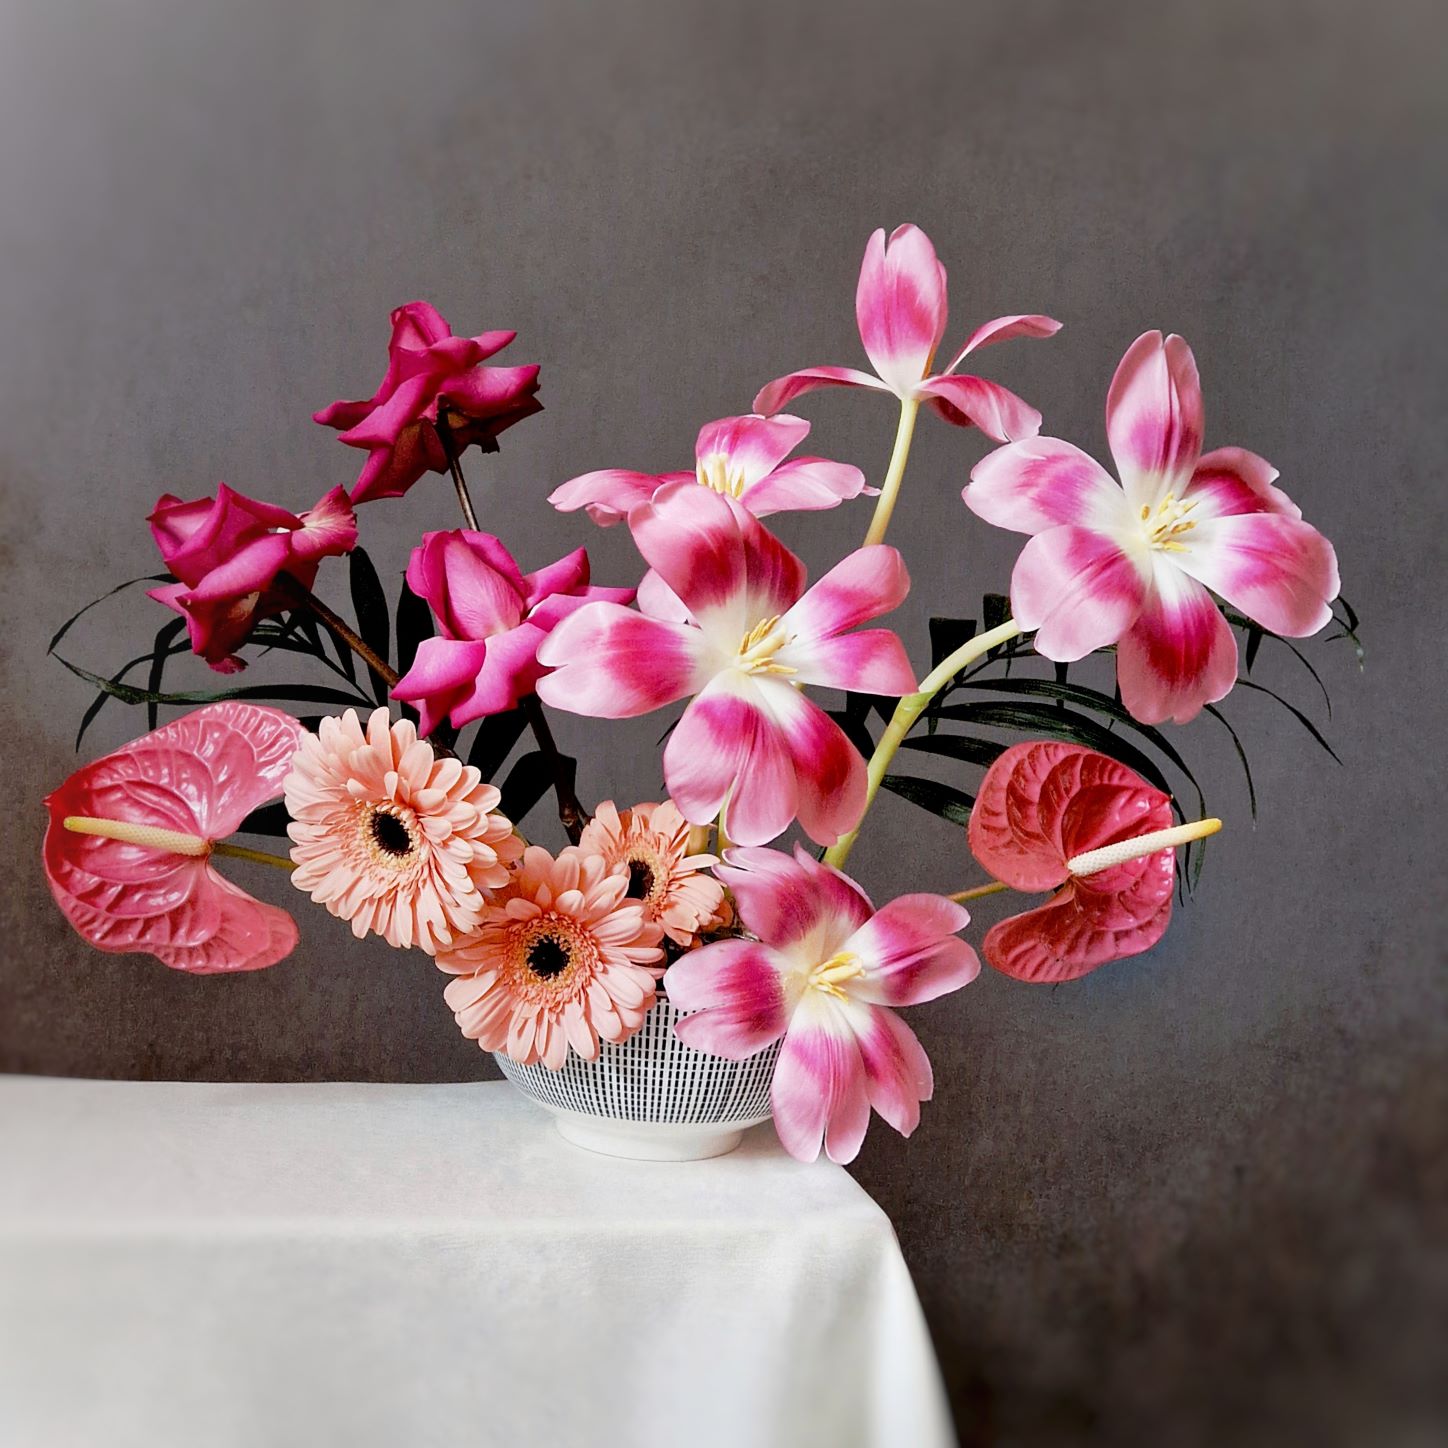 Fiori per San Valentino - Composizione Modern Love by Fili d'Erba floral designer e fiorista freelance a Mirano (Venezia) - Blog Flos Floris